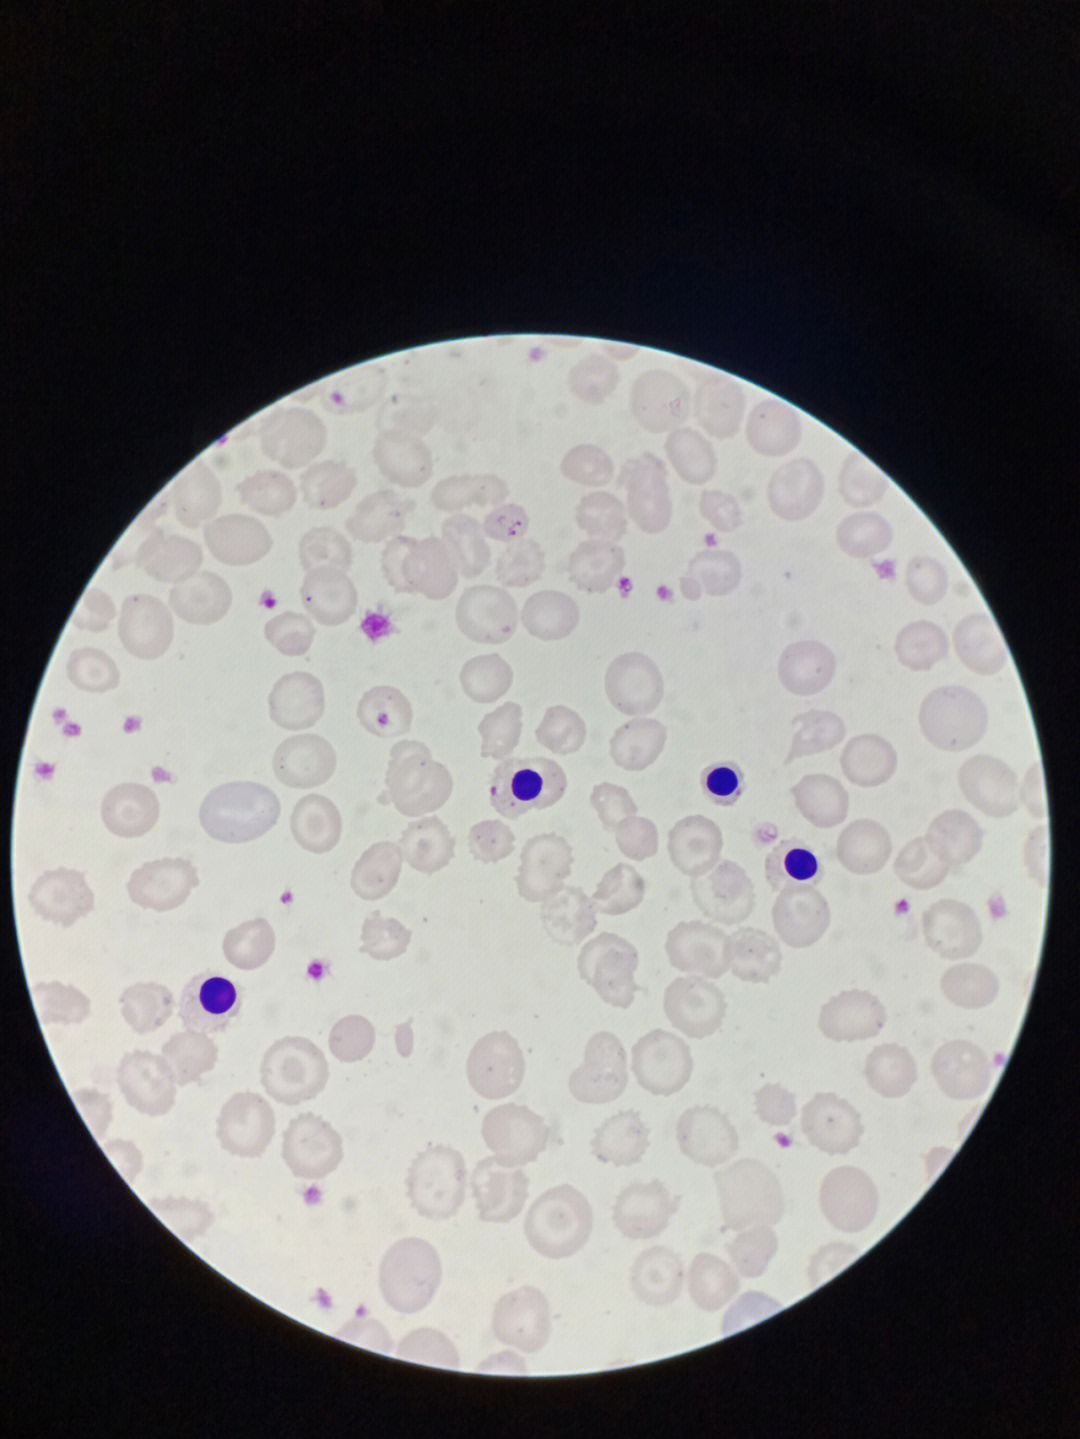 ida血涂片镜下晚幼红细胞